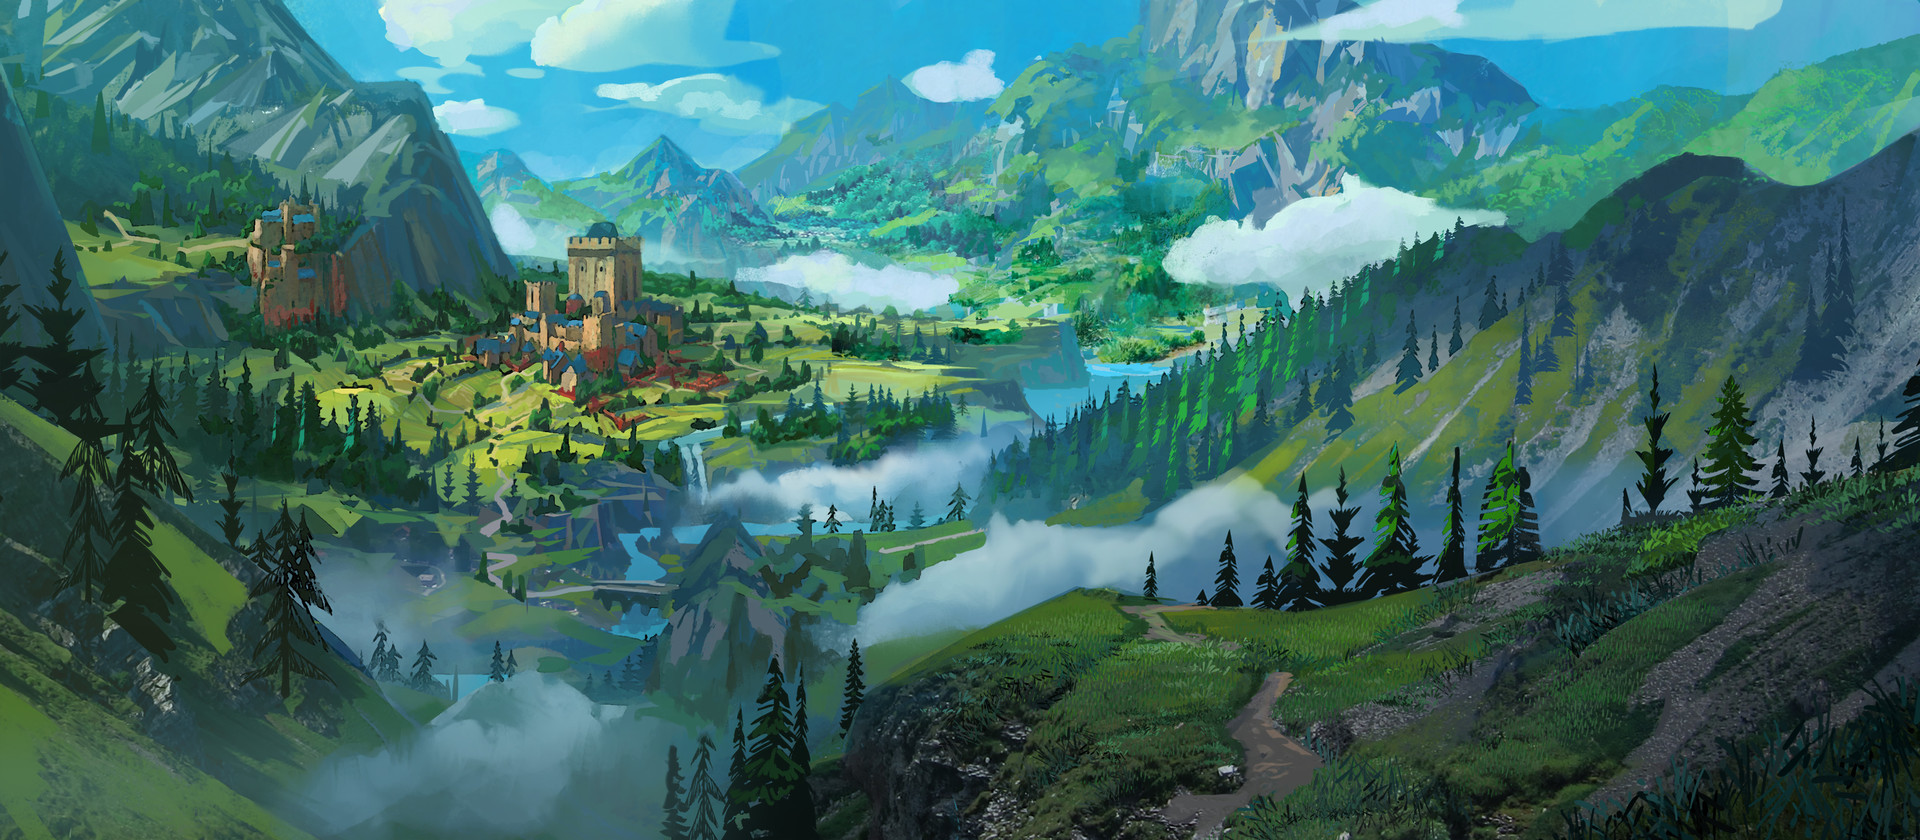 ArtStation - fantasy landscape 1, Tyler edlin